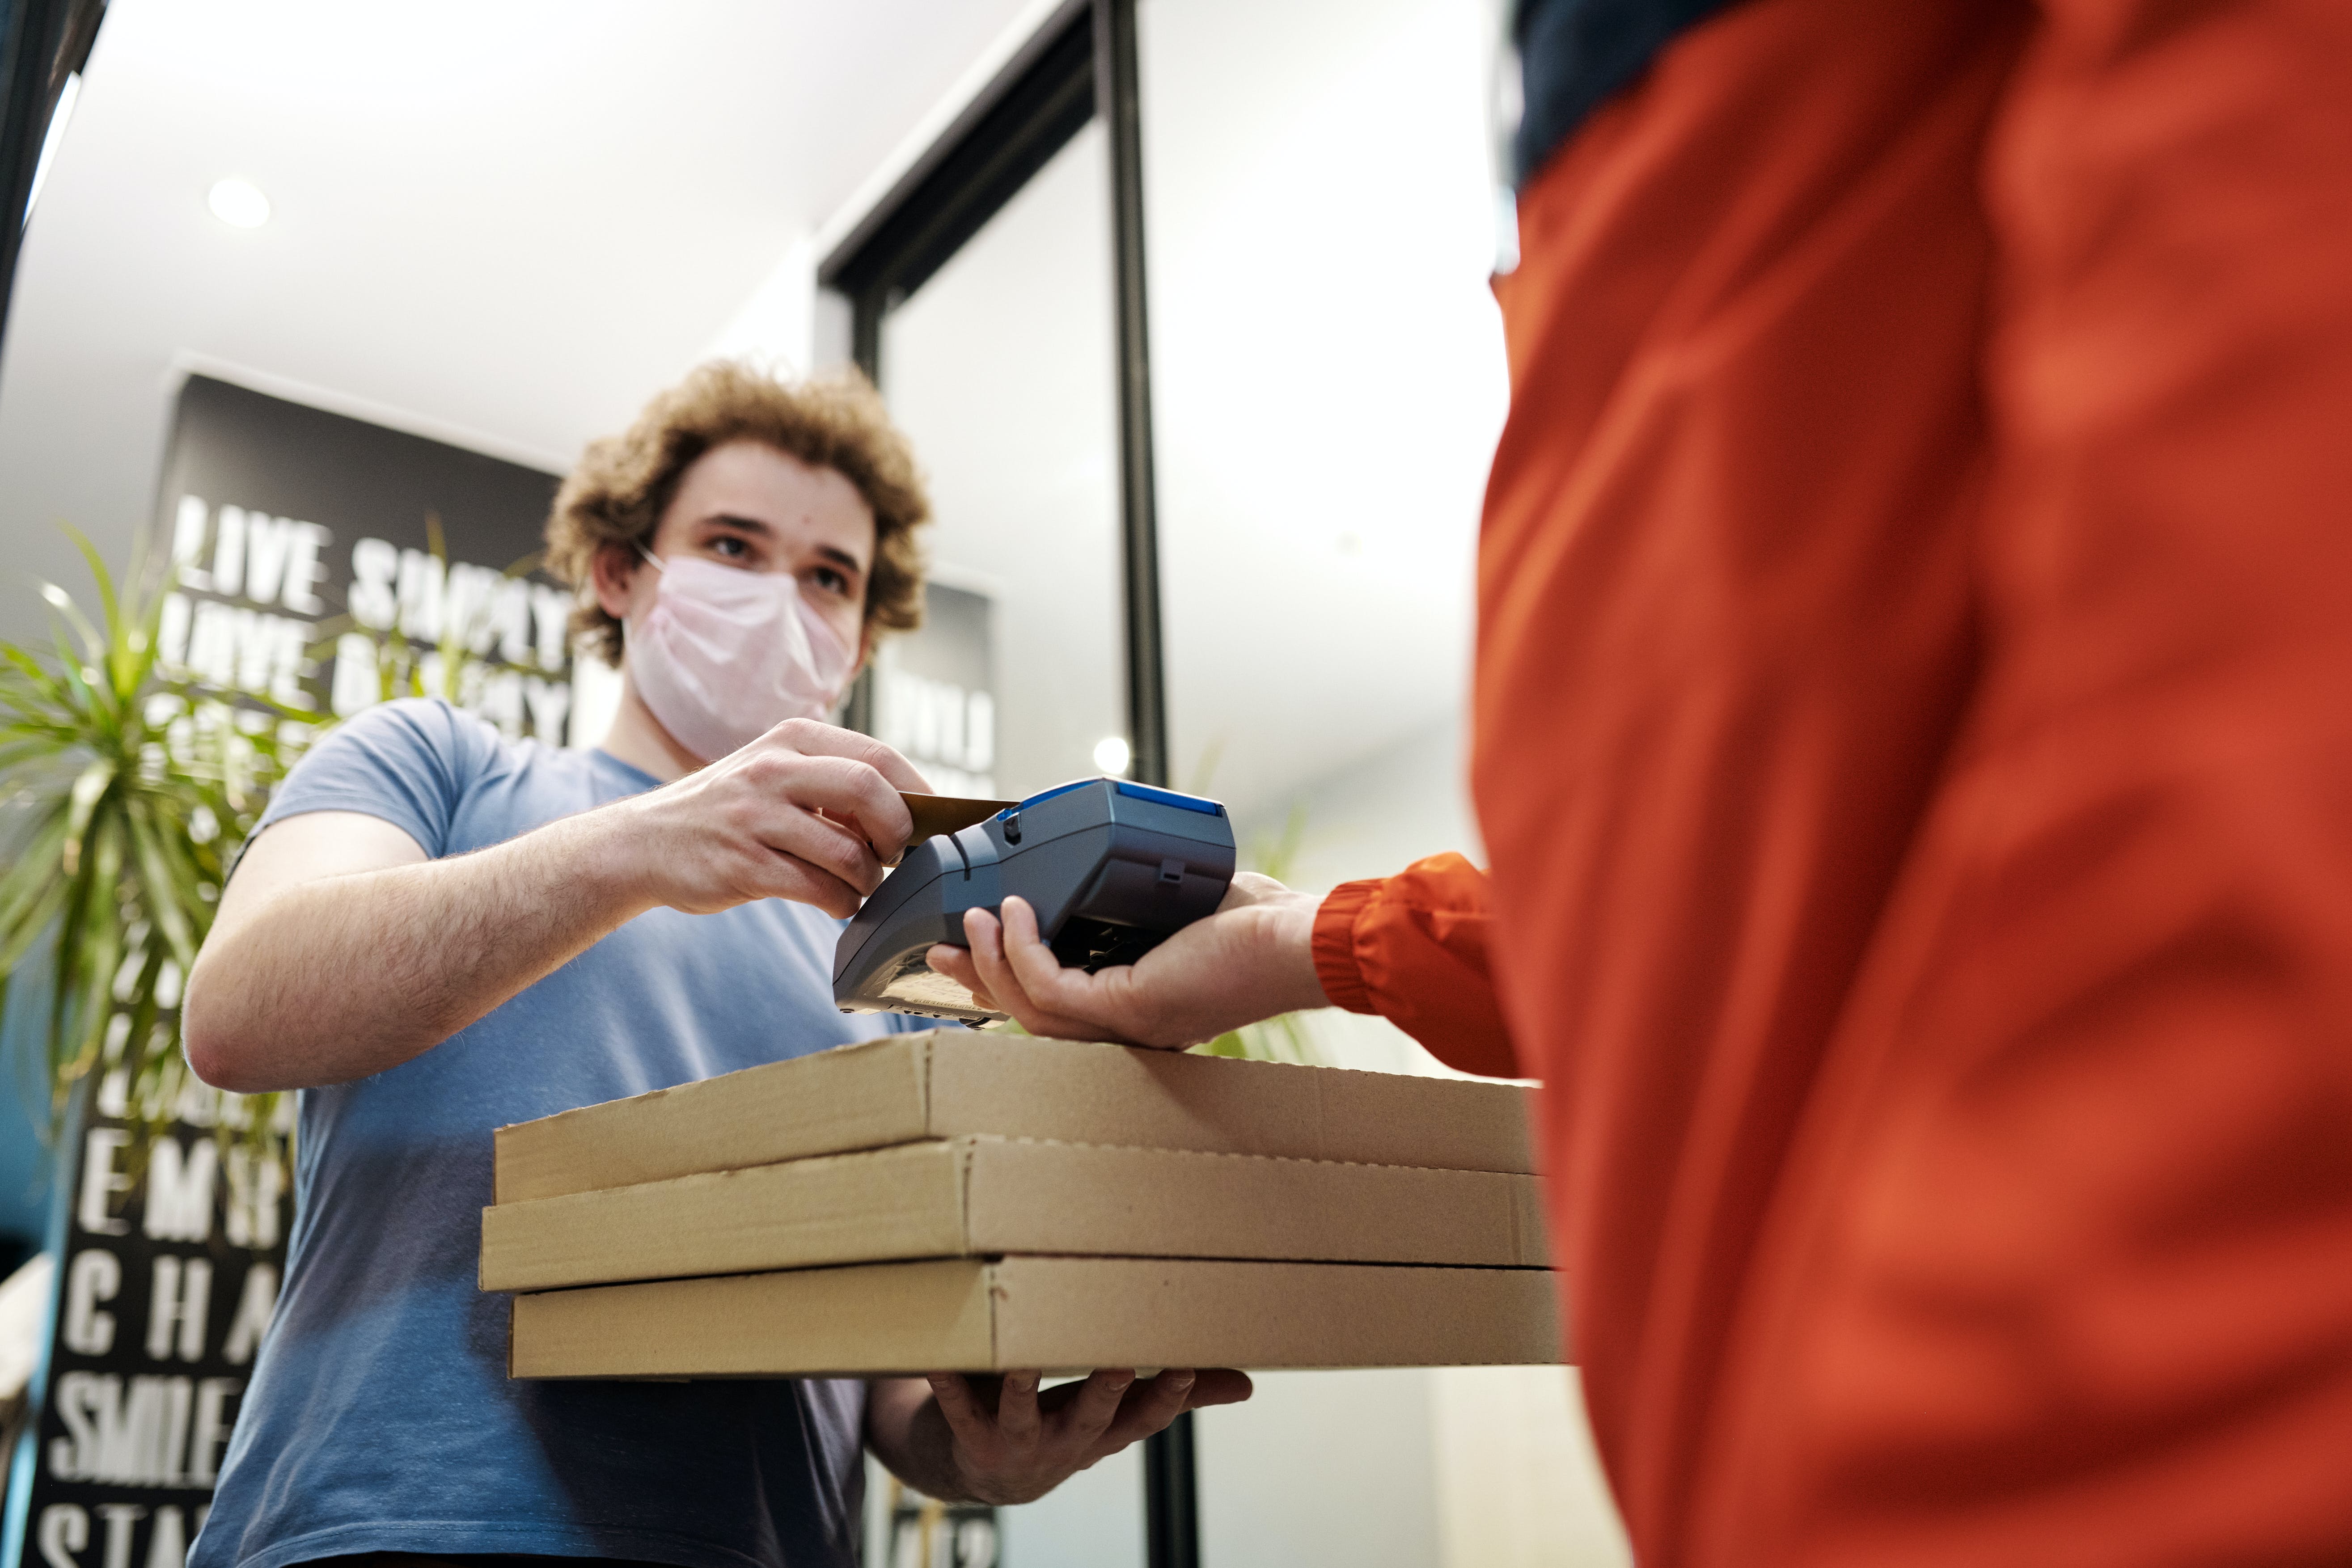 A man receiving his pizza order. | Source: Pexels